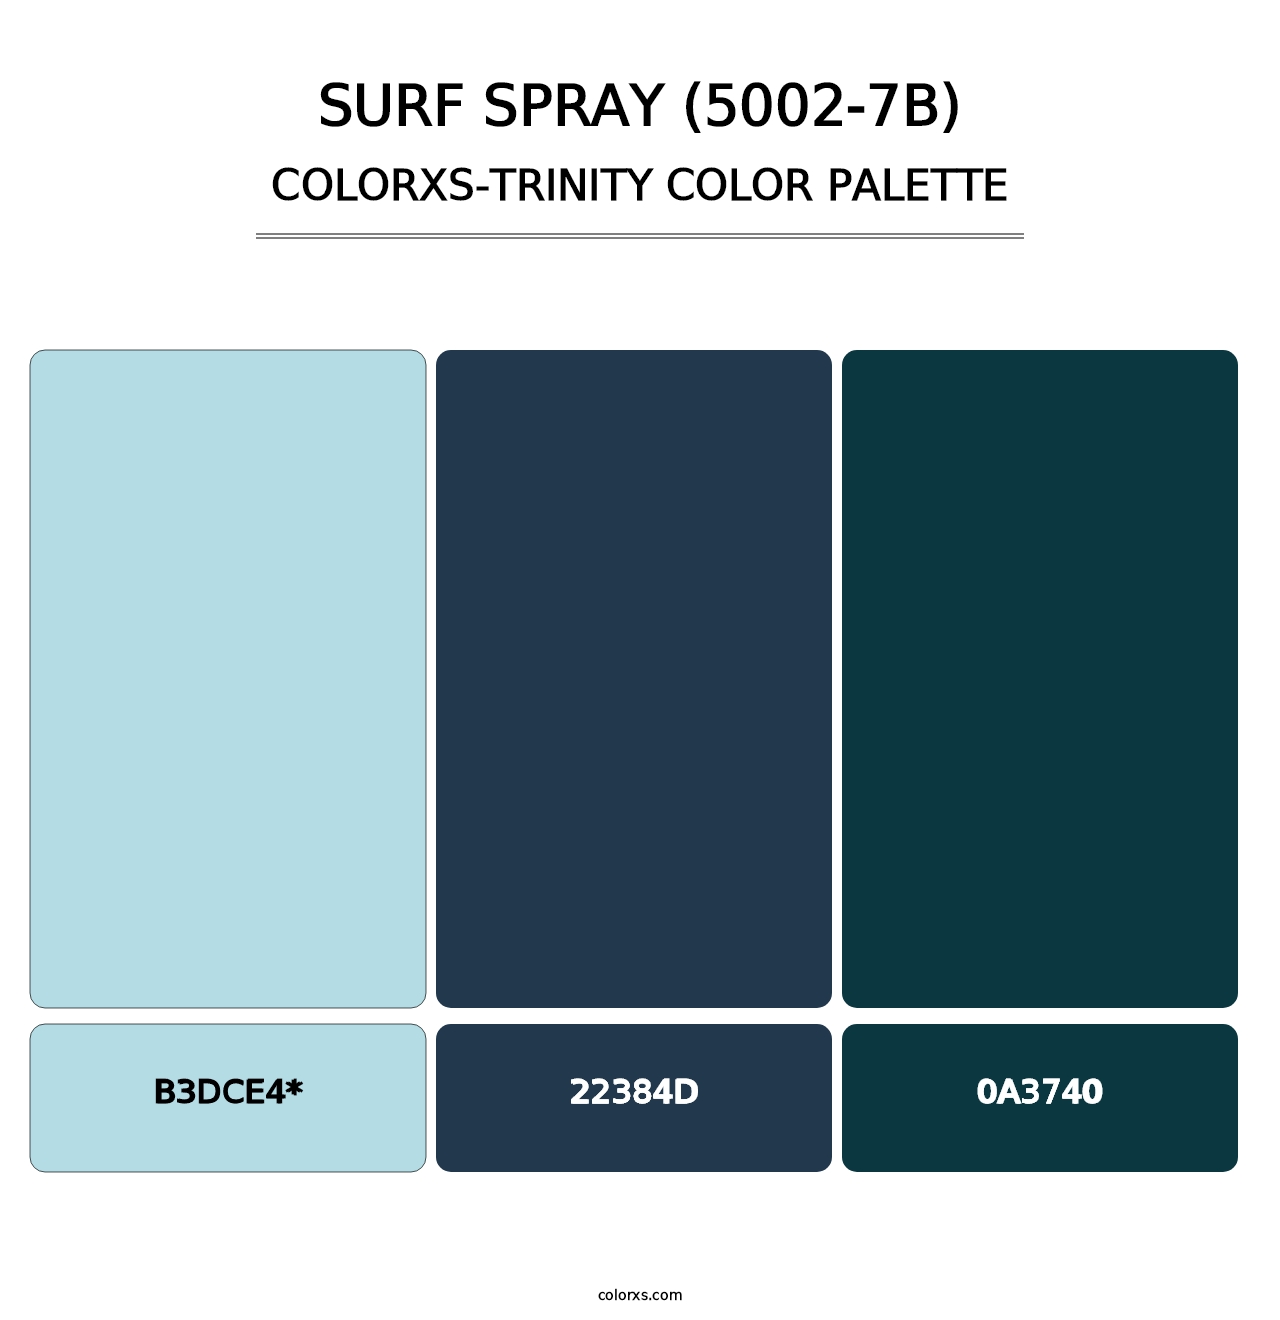 Surf Spray (5002-7B) - Colorxs Trinity Palette